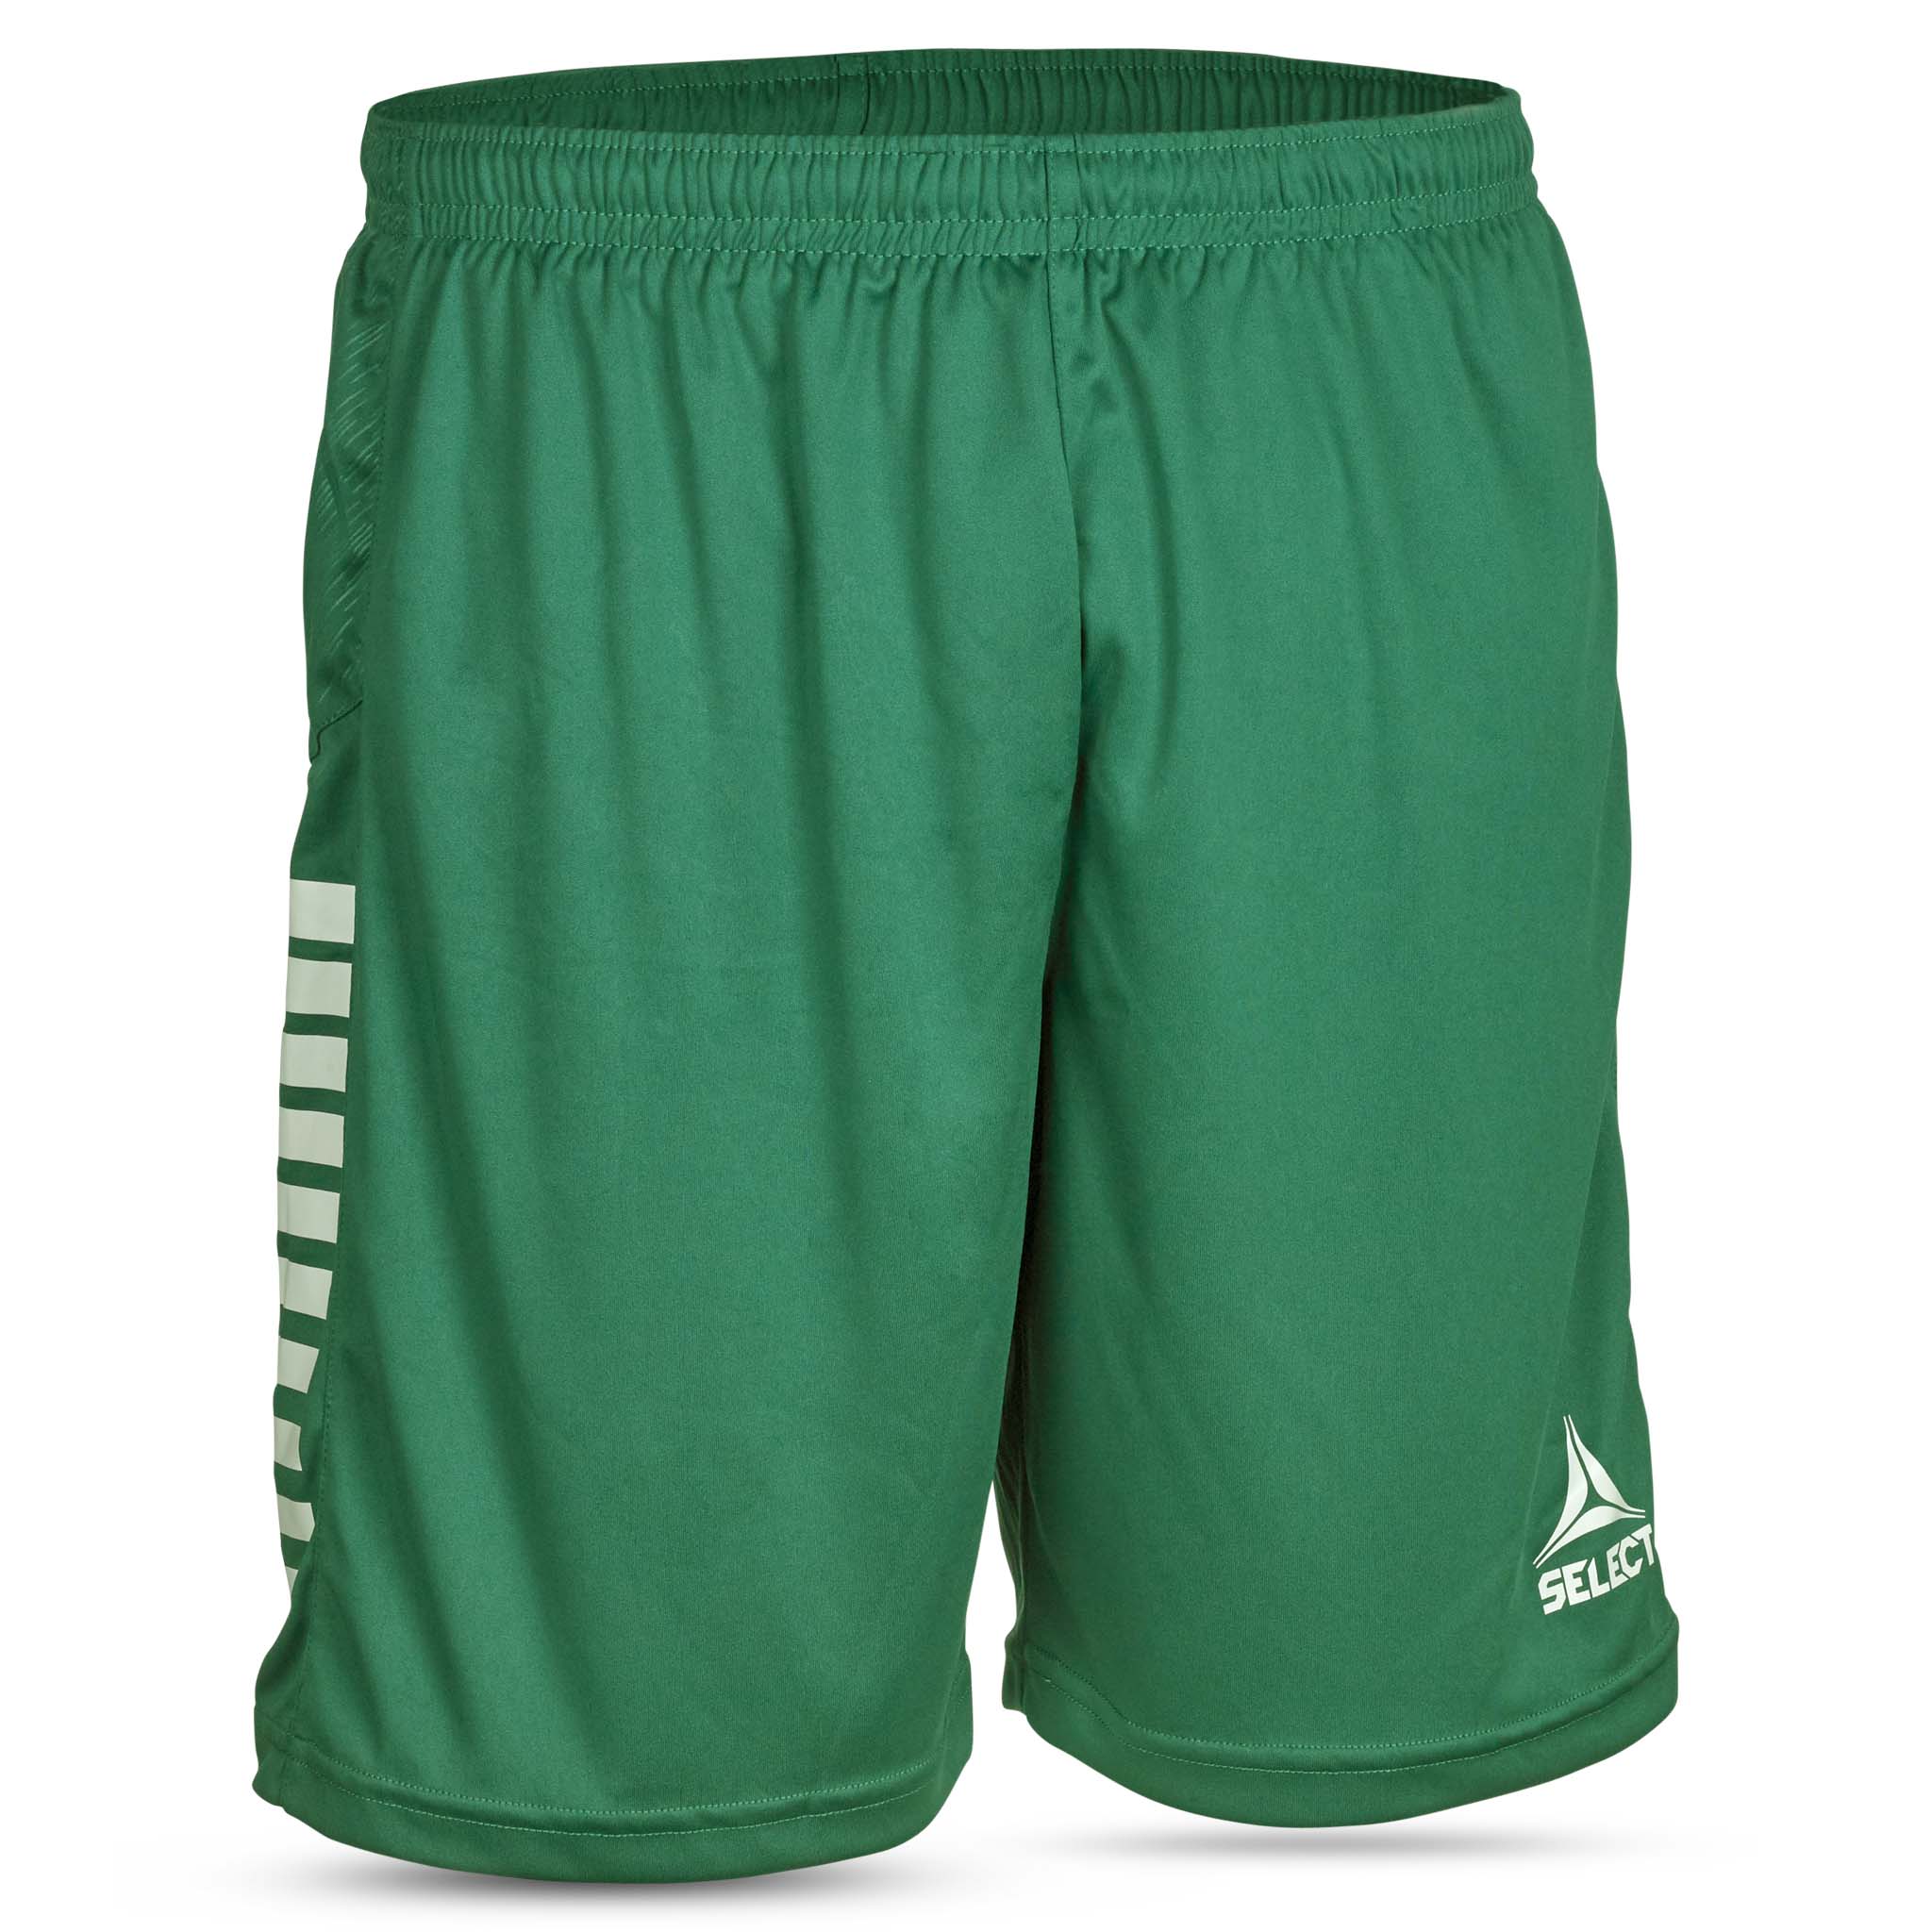 Spain Shorts - Barn #farge_grønn